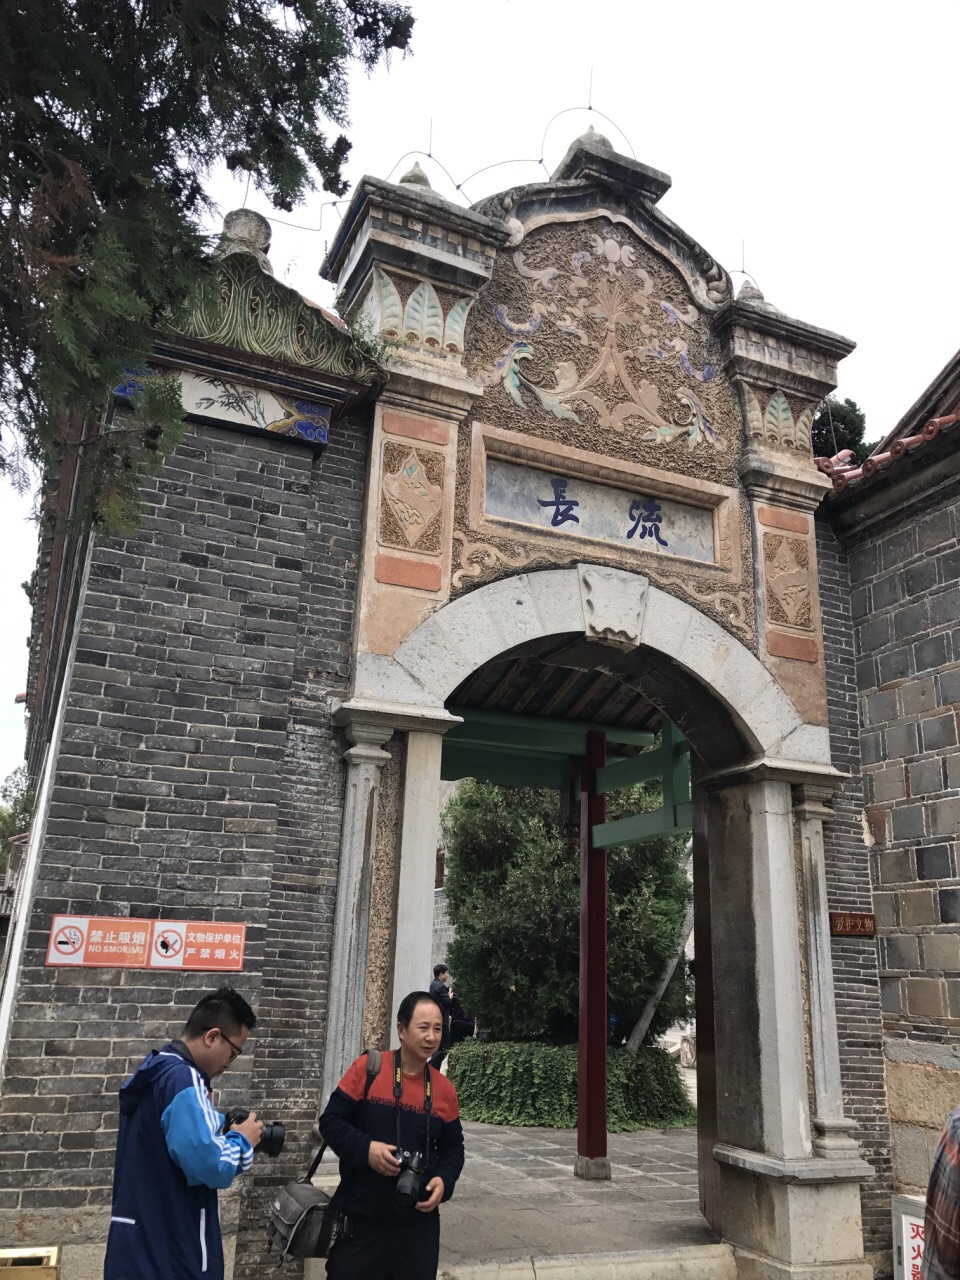 龙氏家祠是民国时期云南省主席龙云的家祠,位于昭通市城南,建于1930